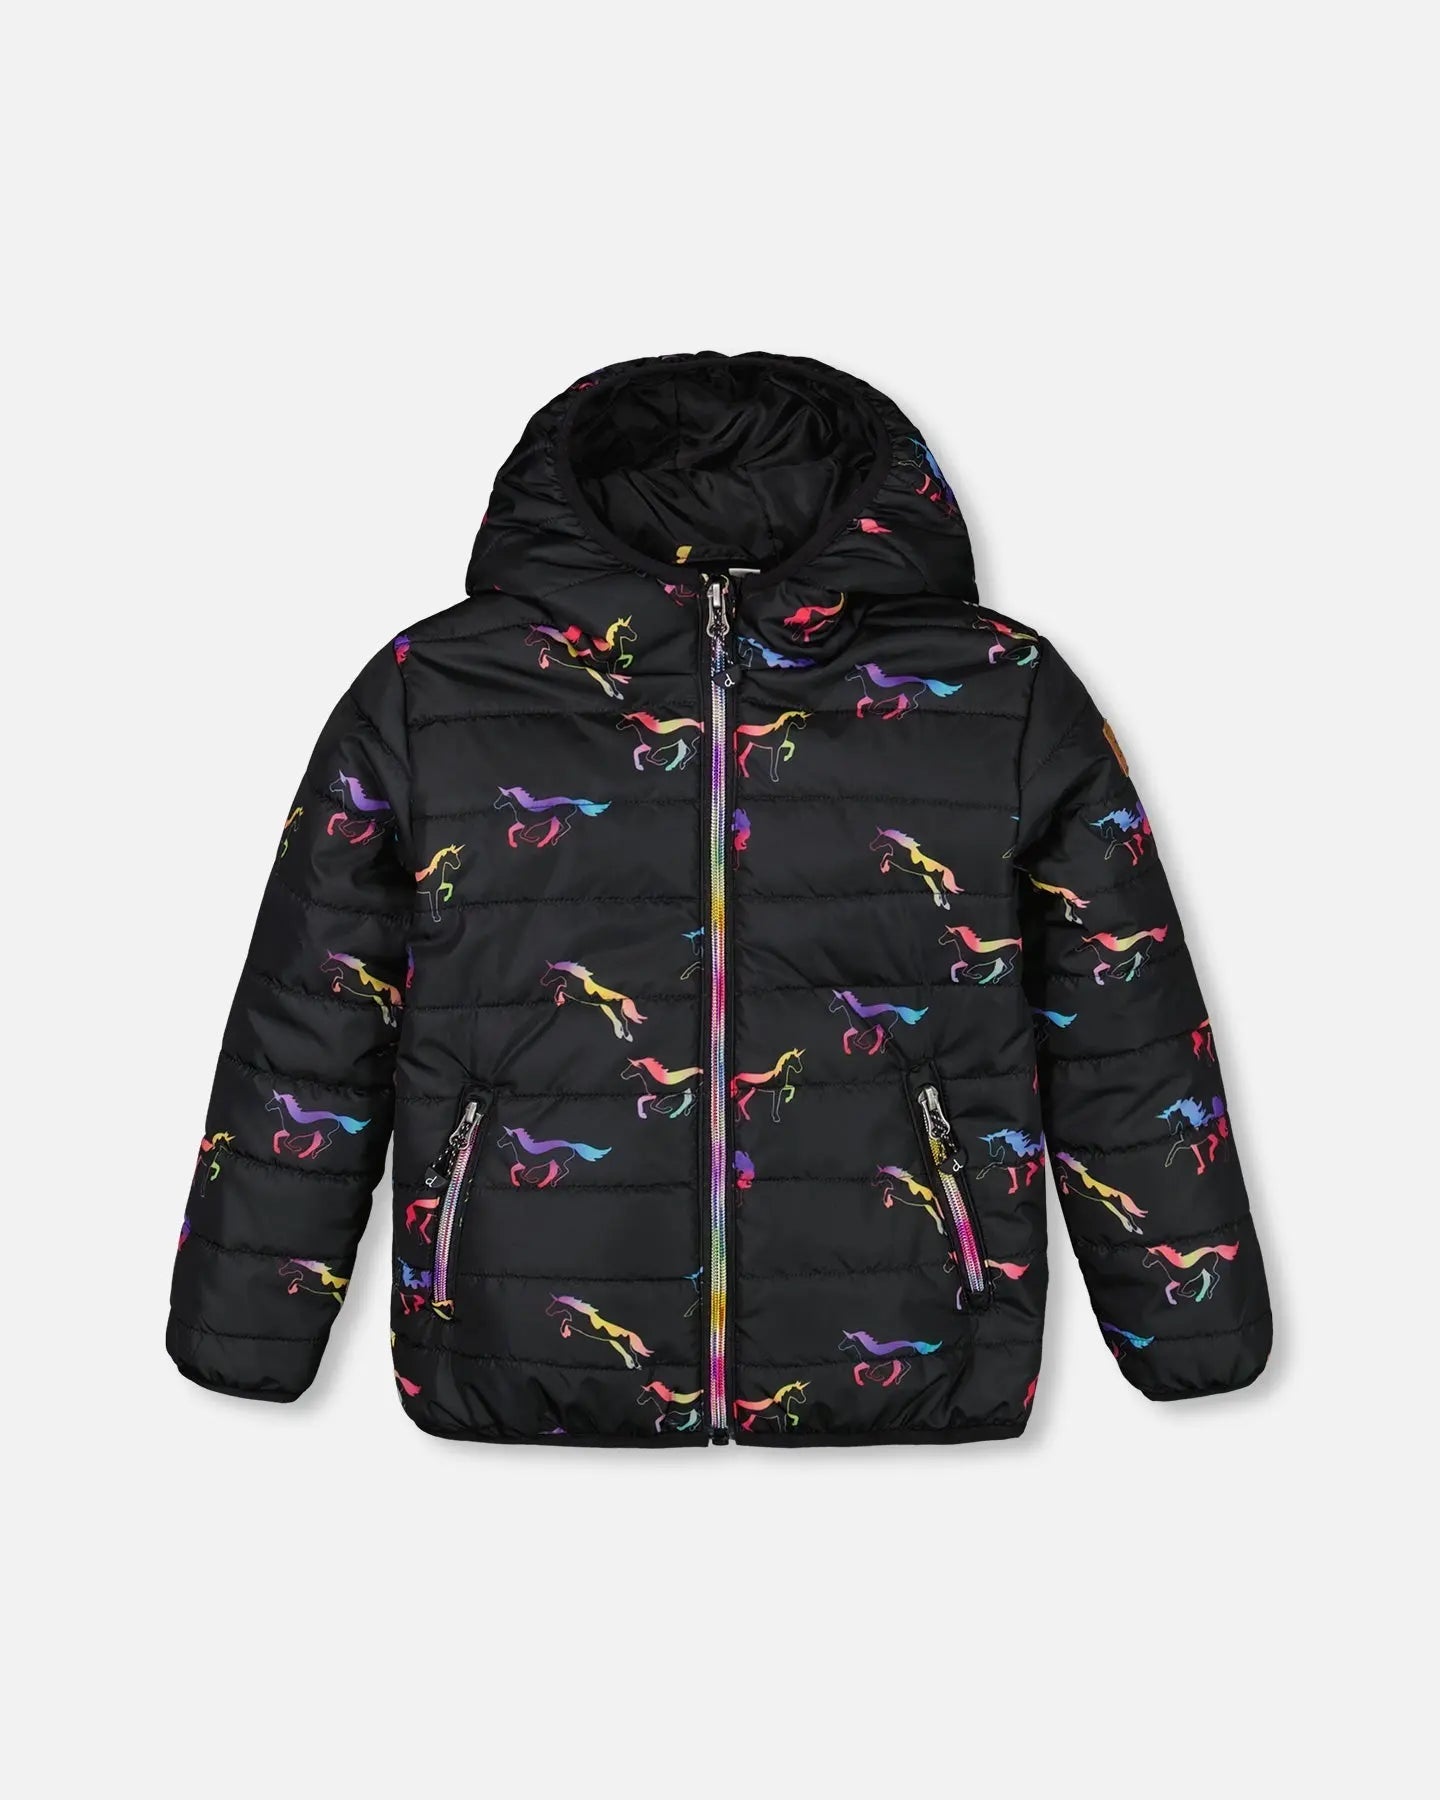 Quilted Mid-Season Jacket Black Printed Multicolor Unicorns